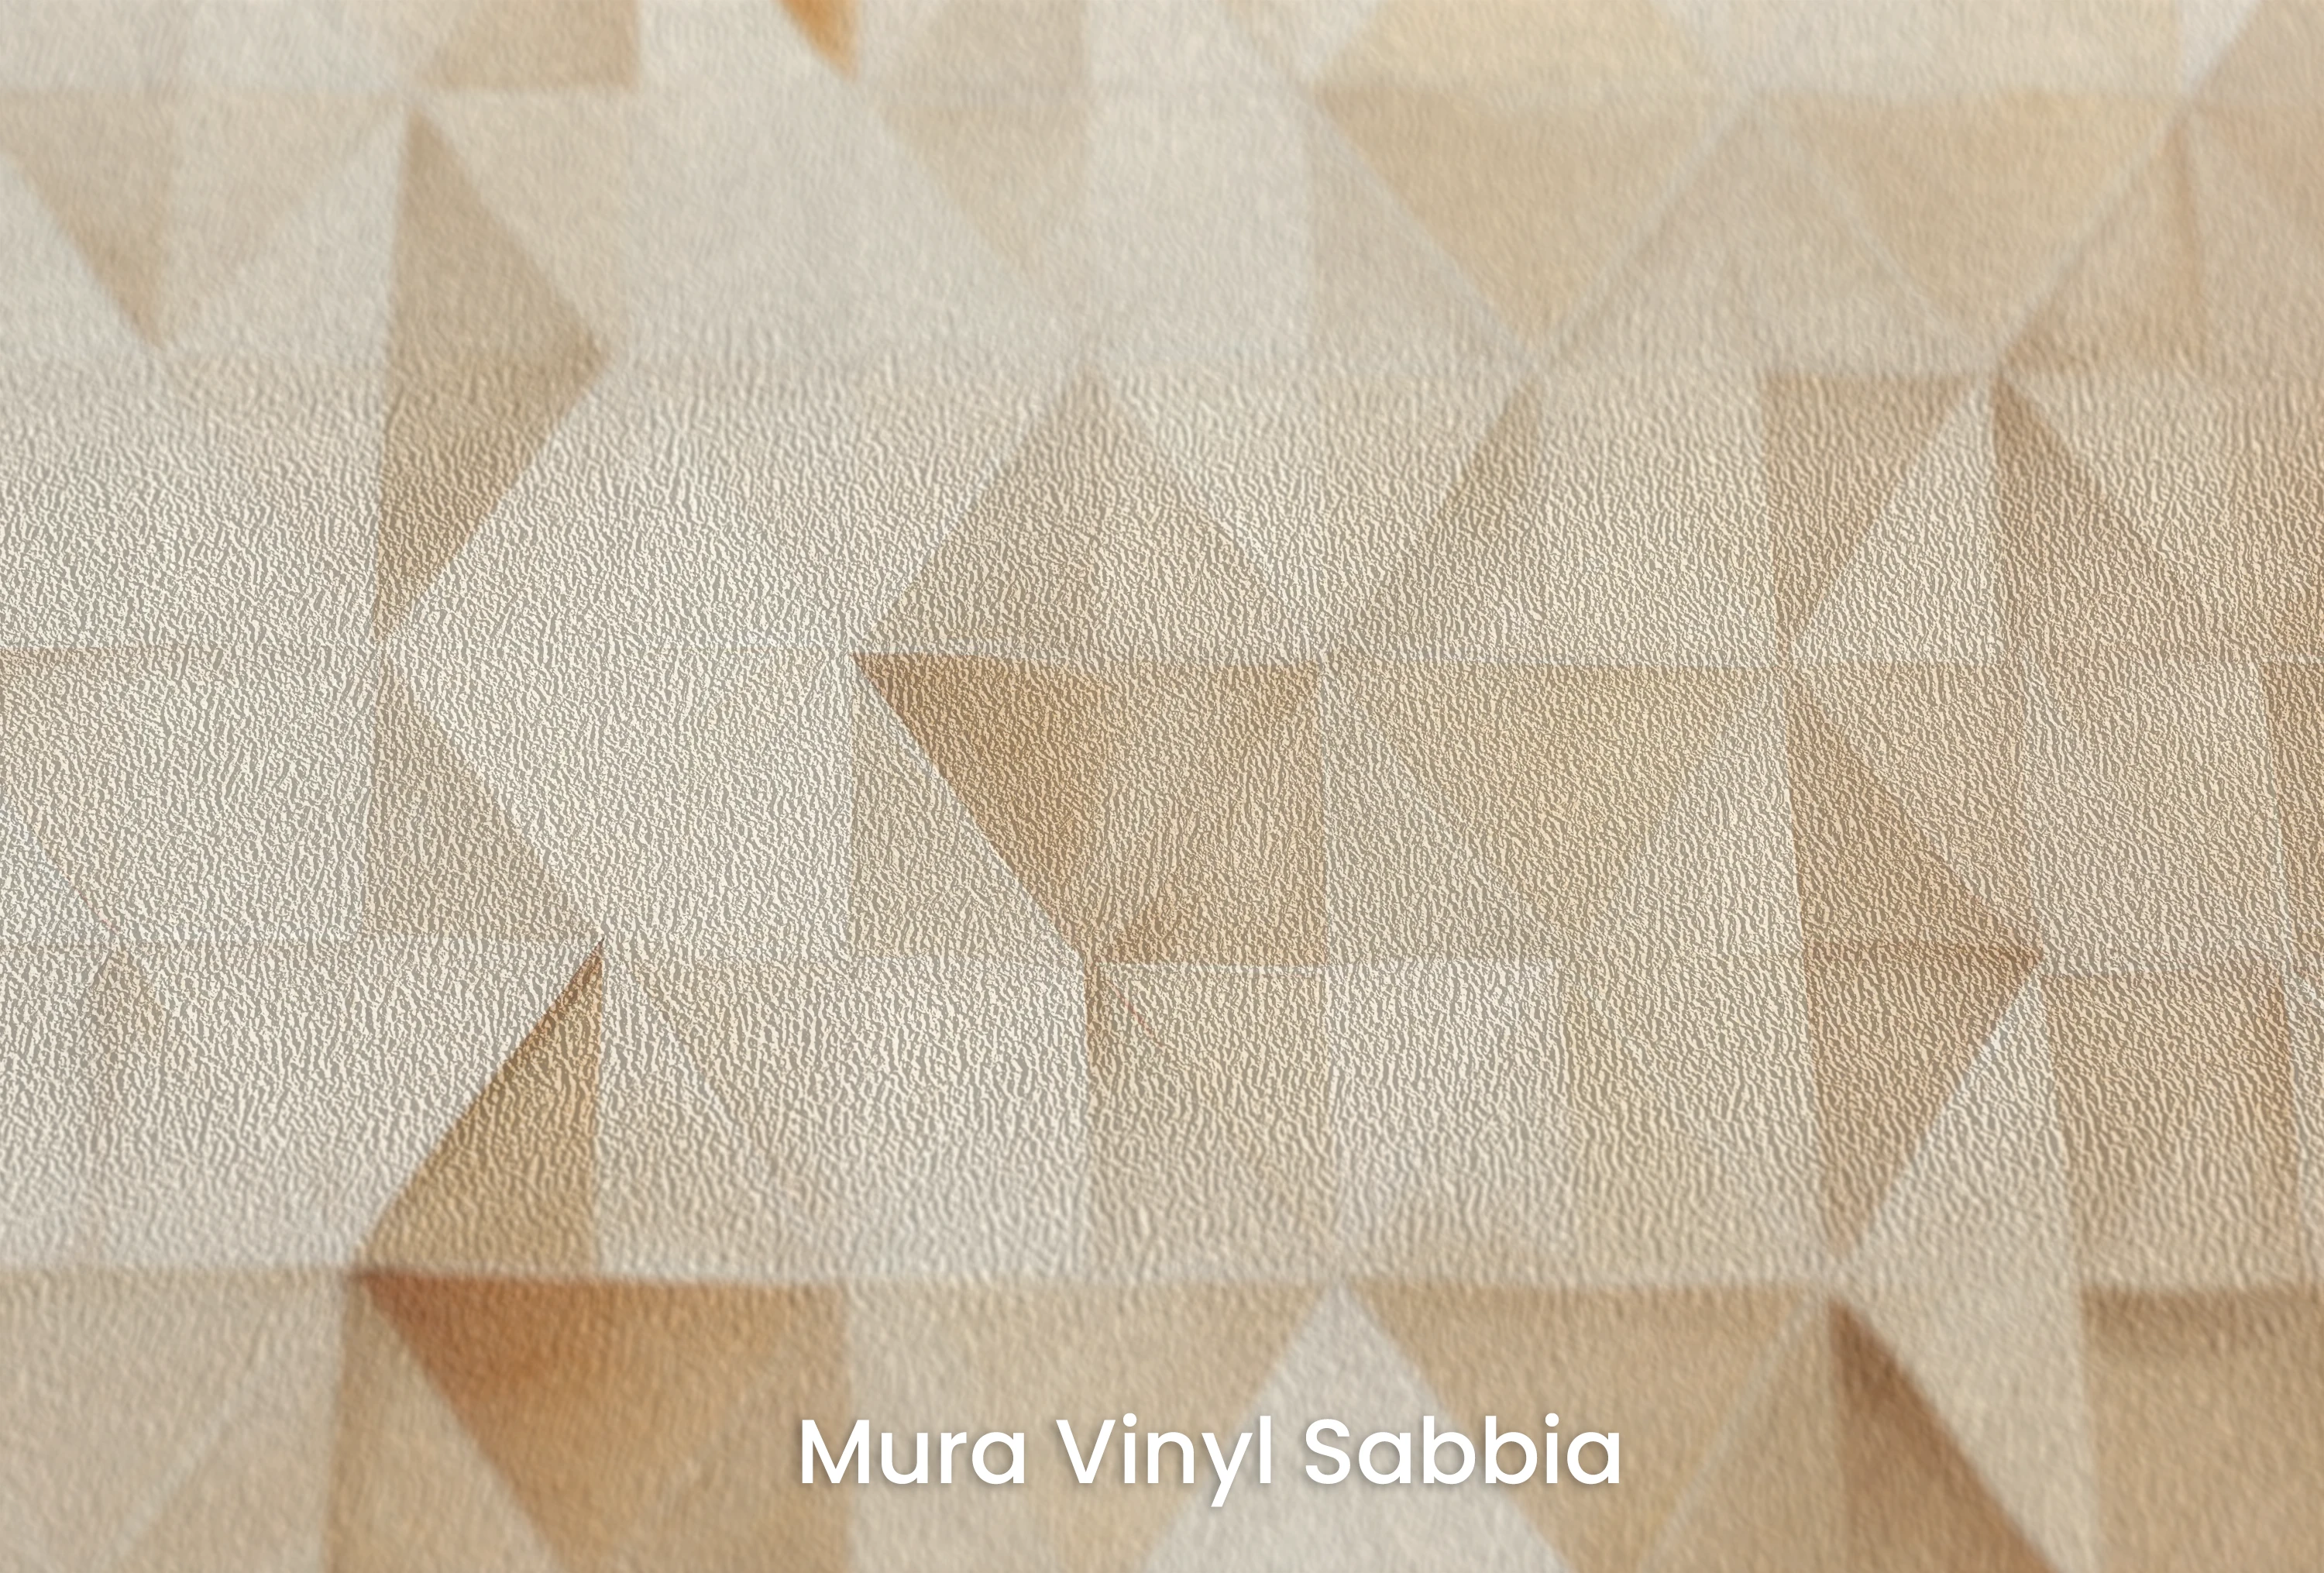 Mura Vinyl Sabbia – Vinyltapete auf Vliesstoff mit grober Sandkornstruktur